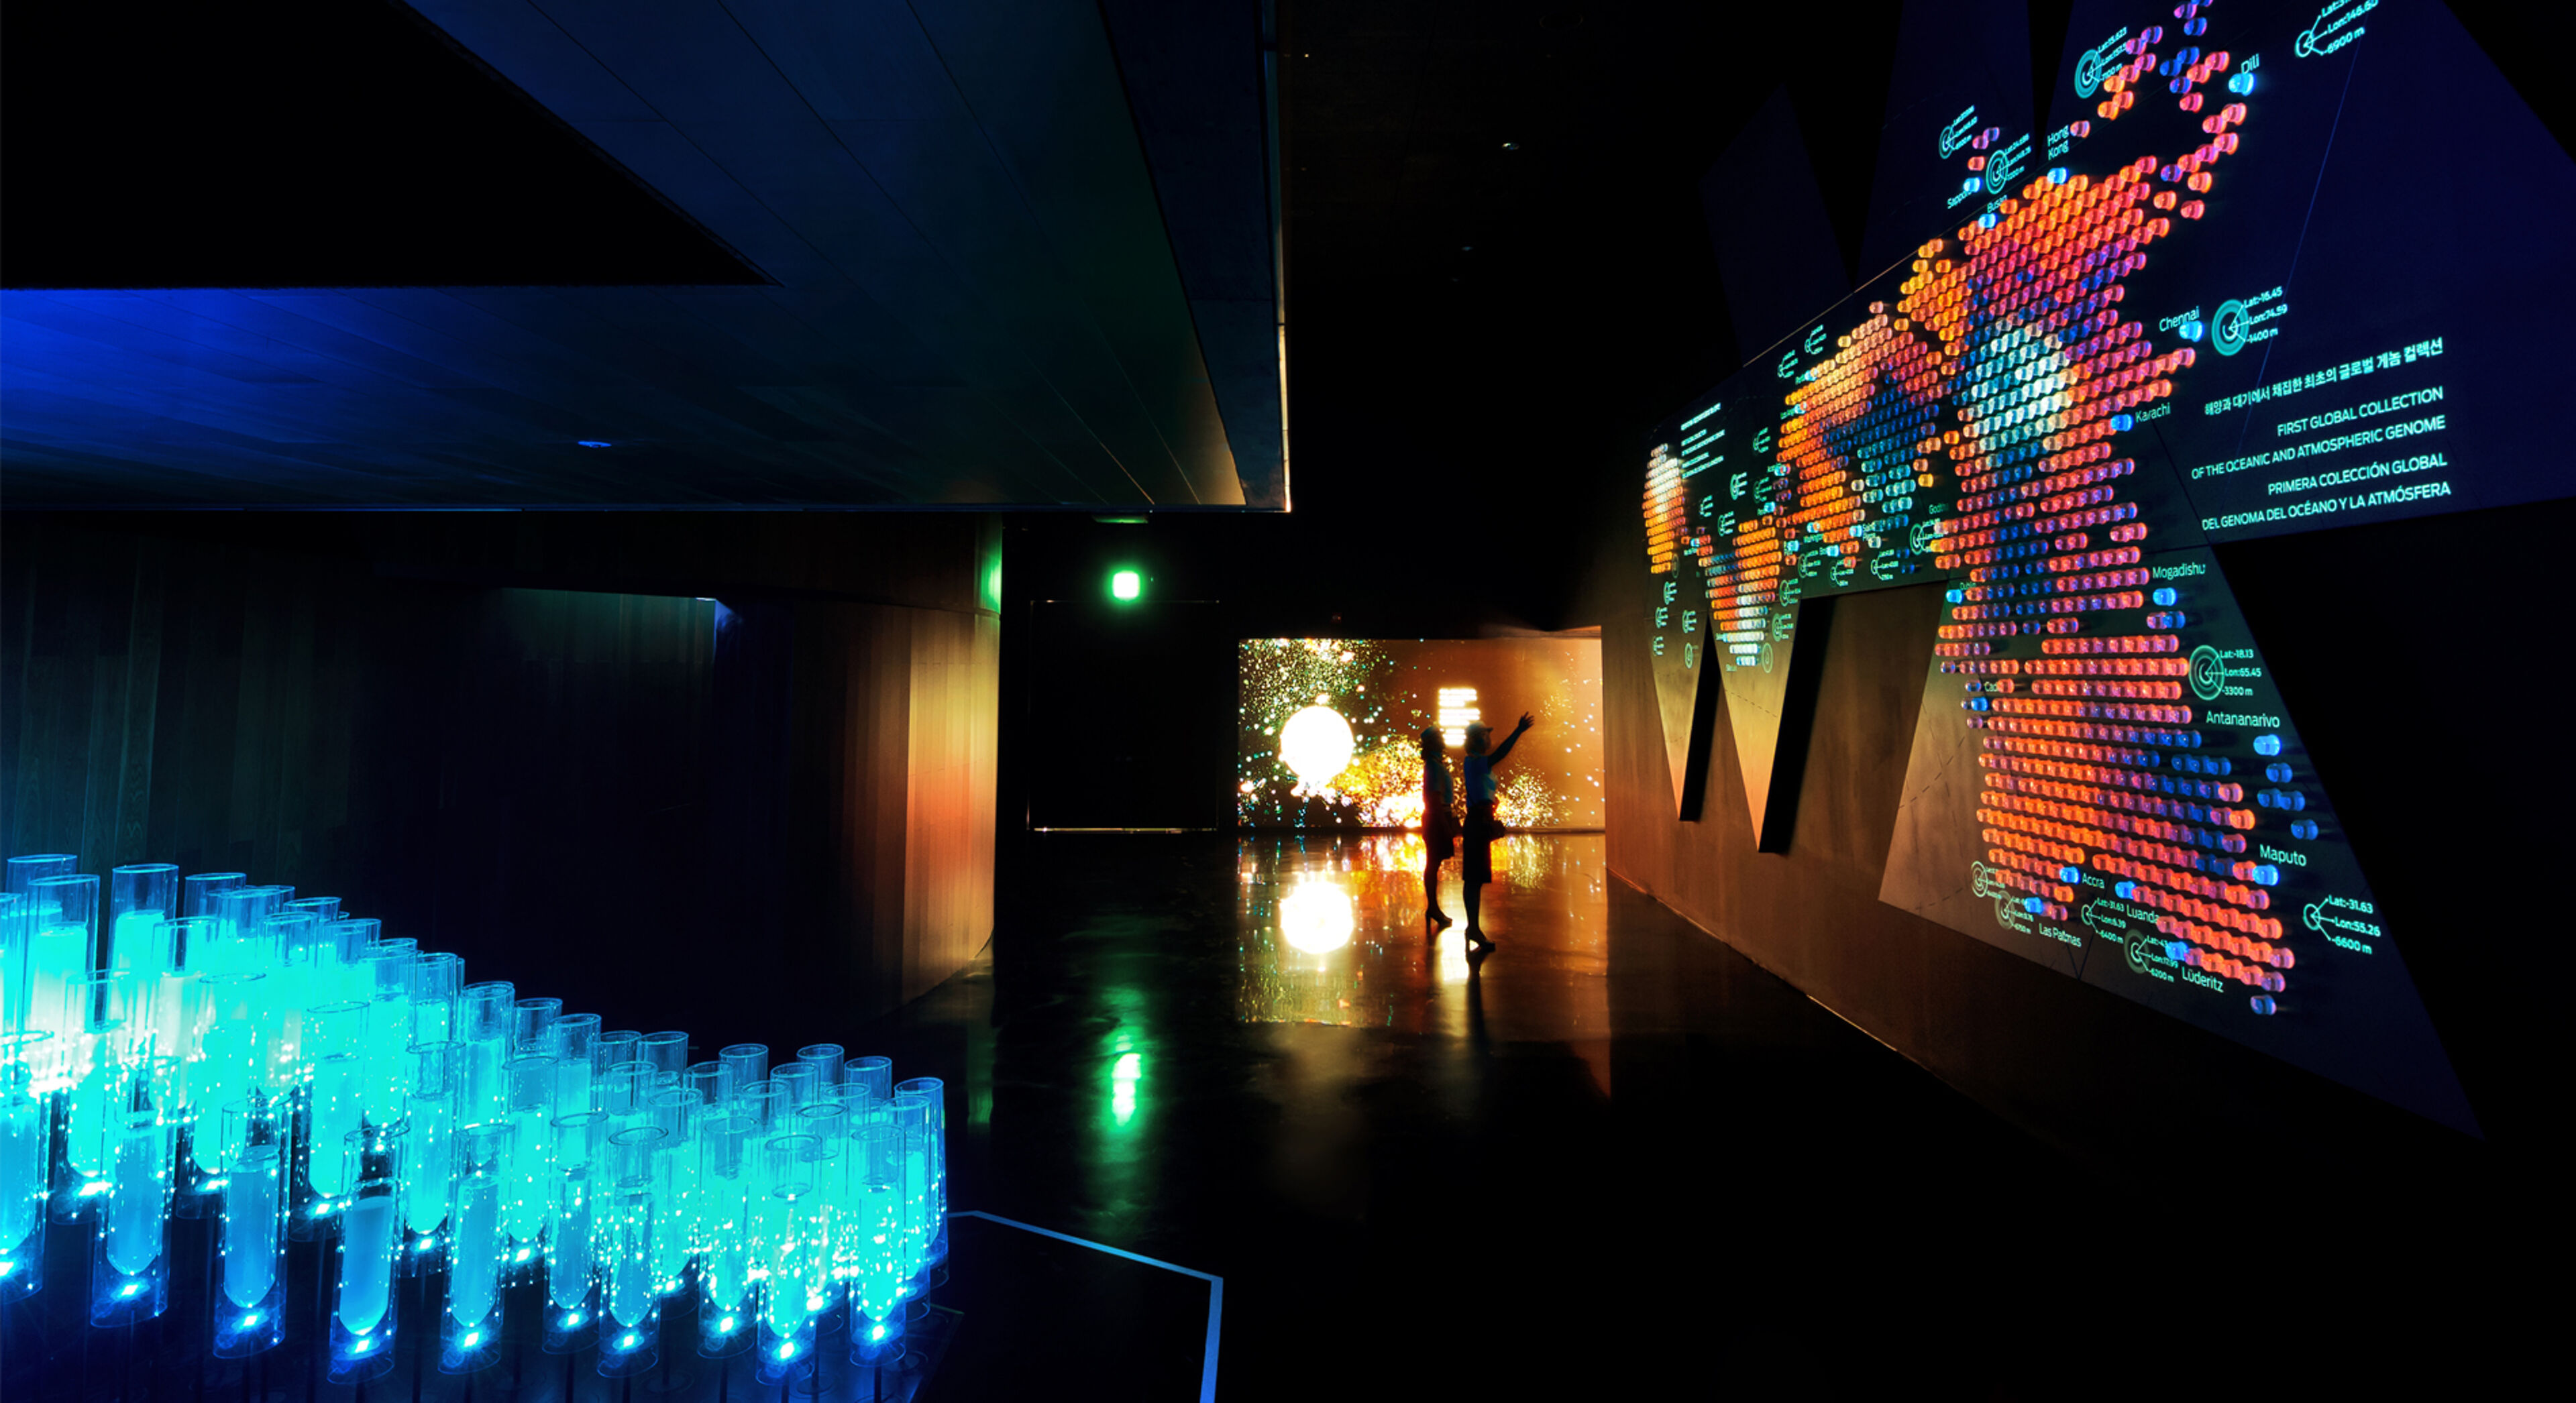 Una habitación oscura iluminada por una instalación de luz interactiva con pantallas visuales vibrantes y la silueta de una persona interactuando con la exhibición.